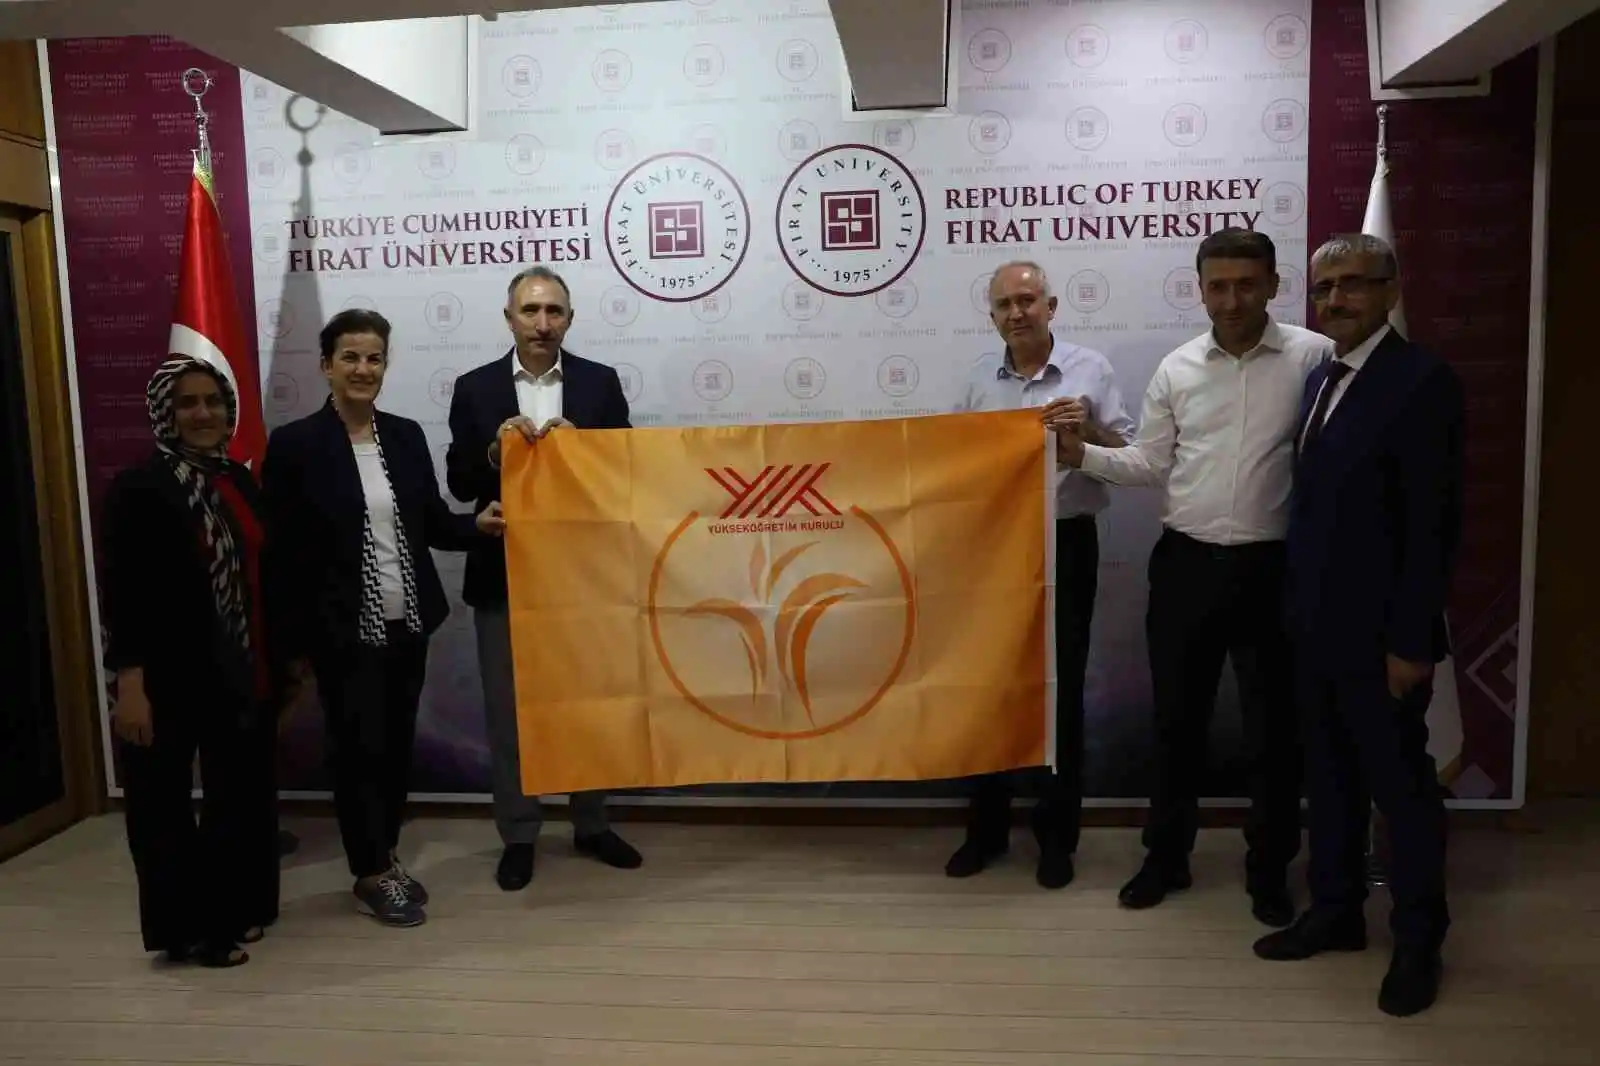 YÖK'ten Fırat Üniversitesine 'Turuncu' bayrak
